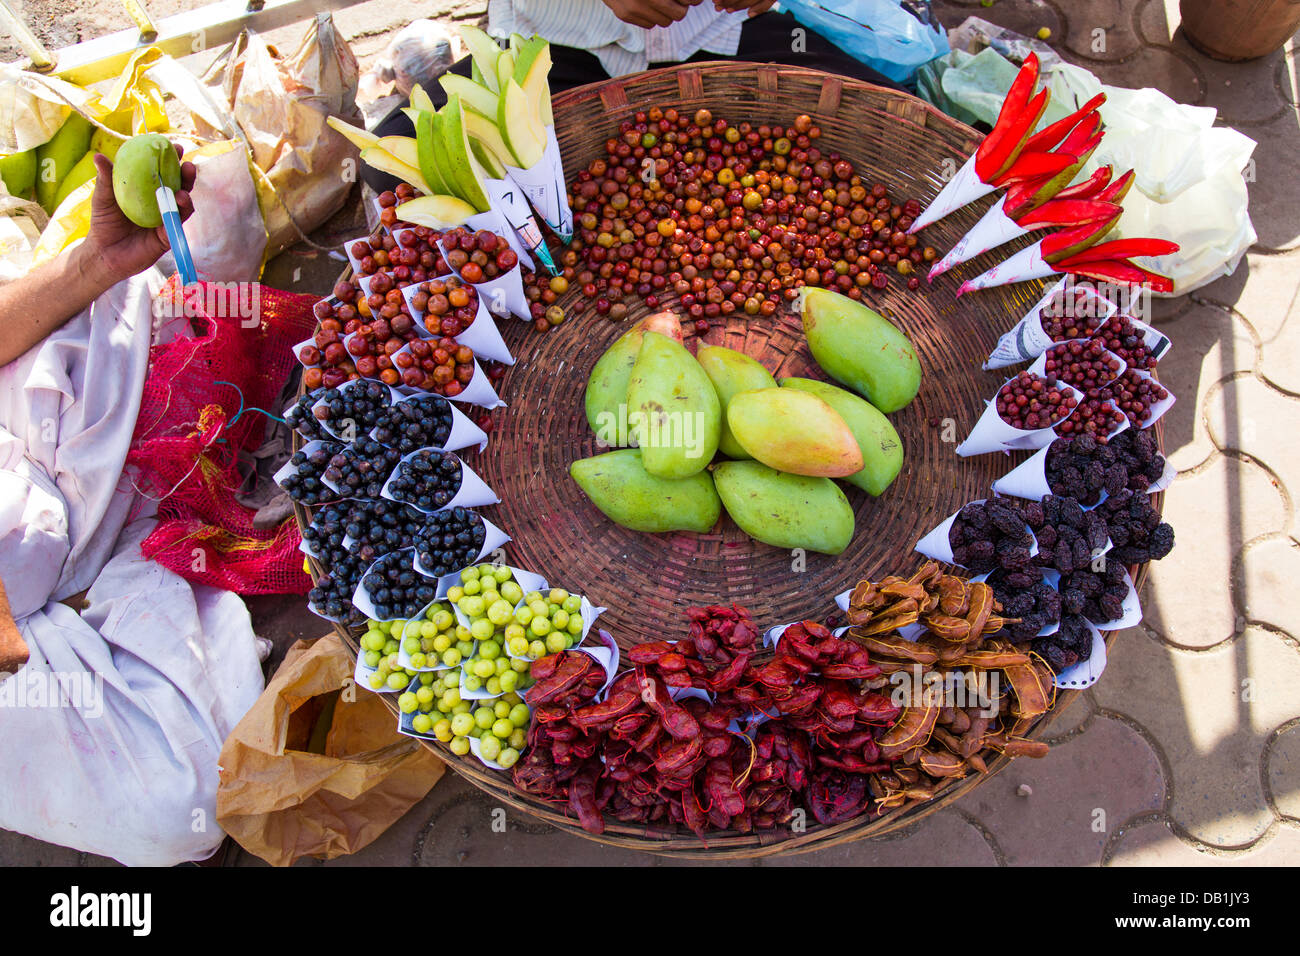 Des fruits, des collations d'aliments de rue à Mumbai, Inde Banque D'Images